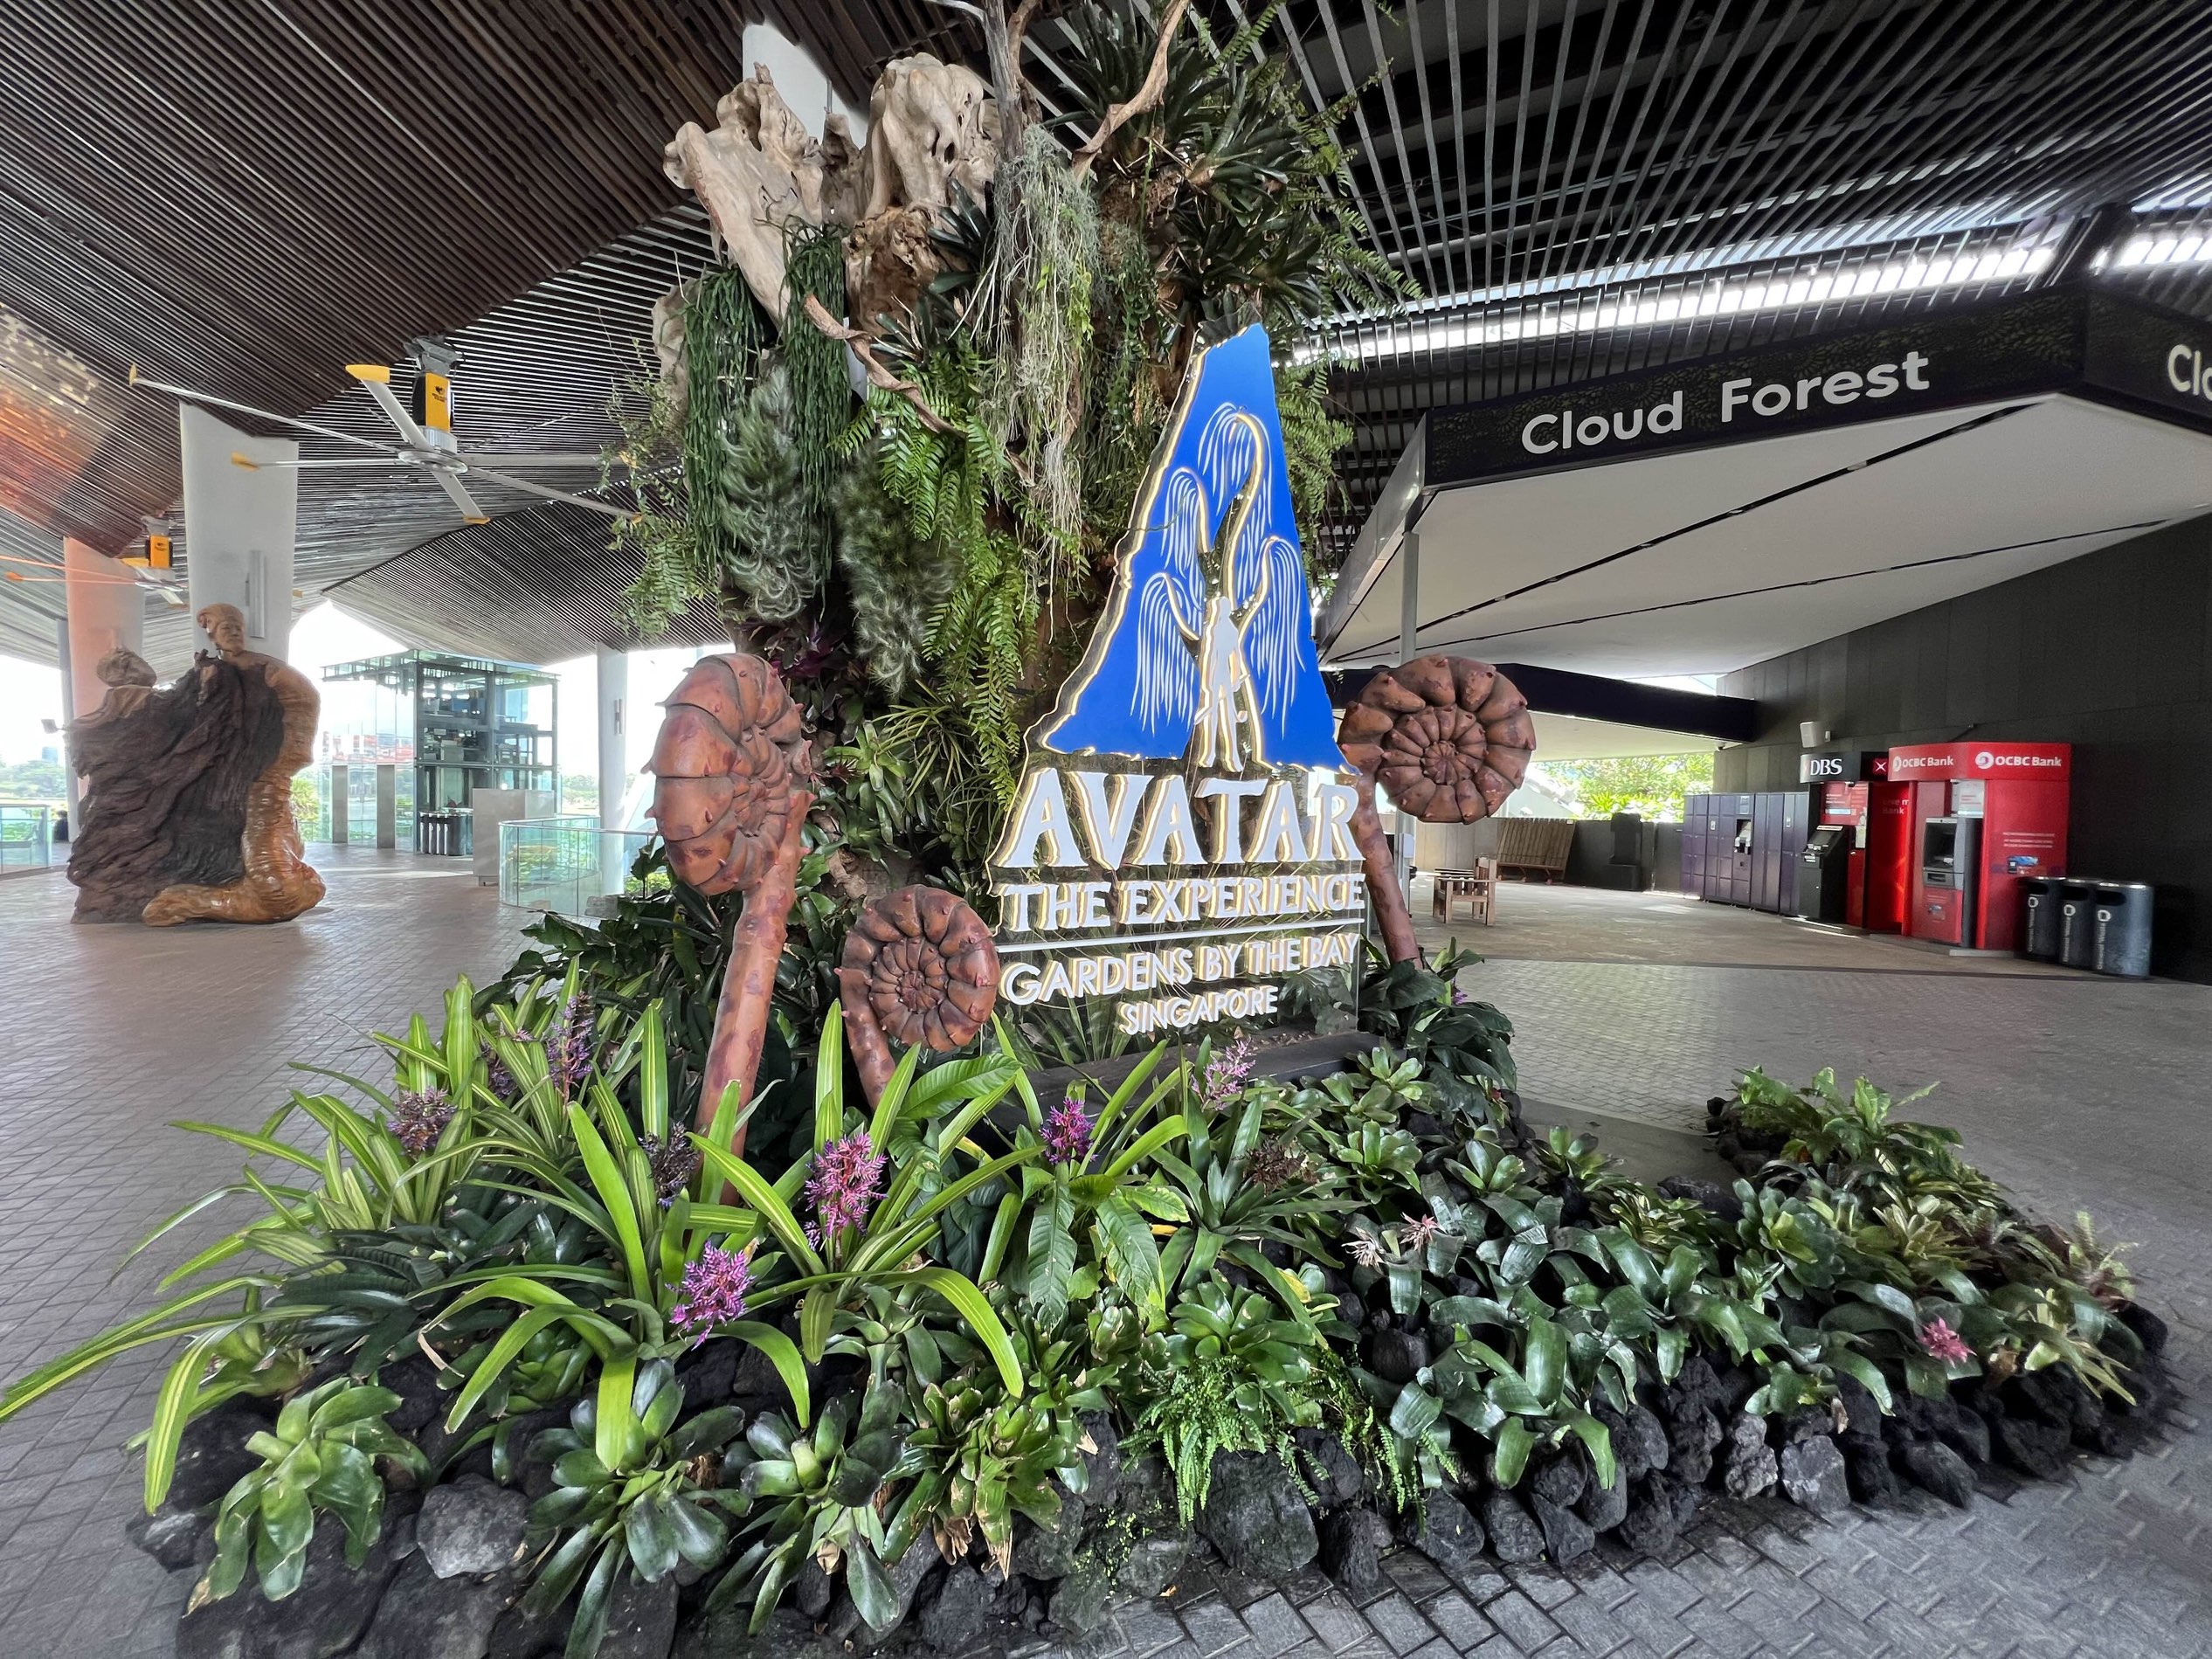 Changi Airport and Jewel Changi Airport launch Avatar and marine